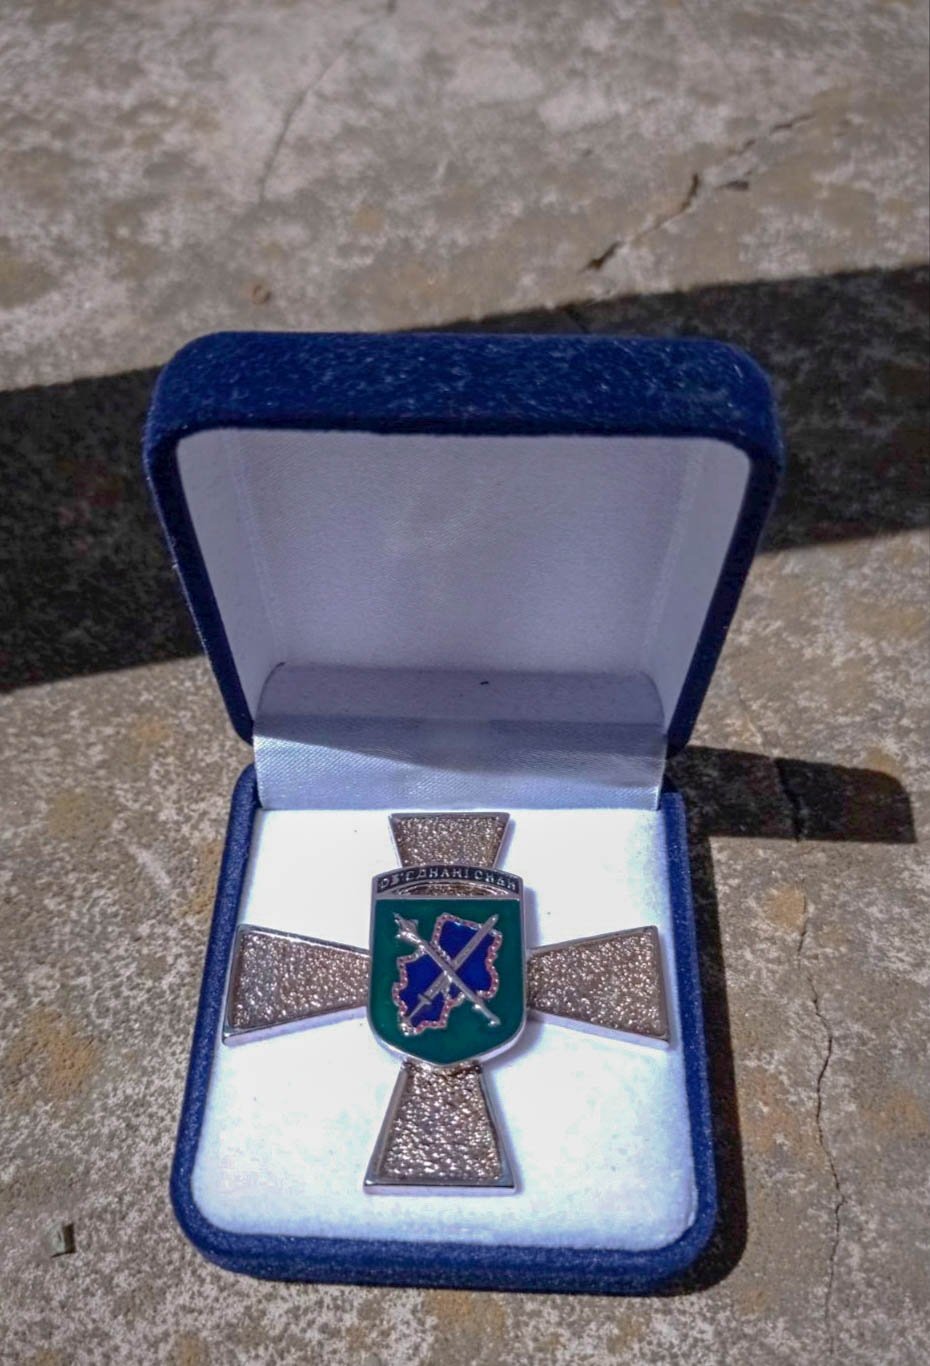 Франківському муніципалу вручили бойову нагороду “Козацький хрест” ІІІ ступеня